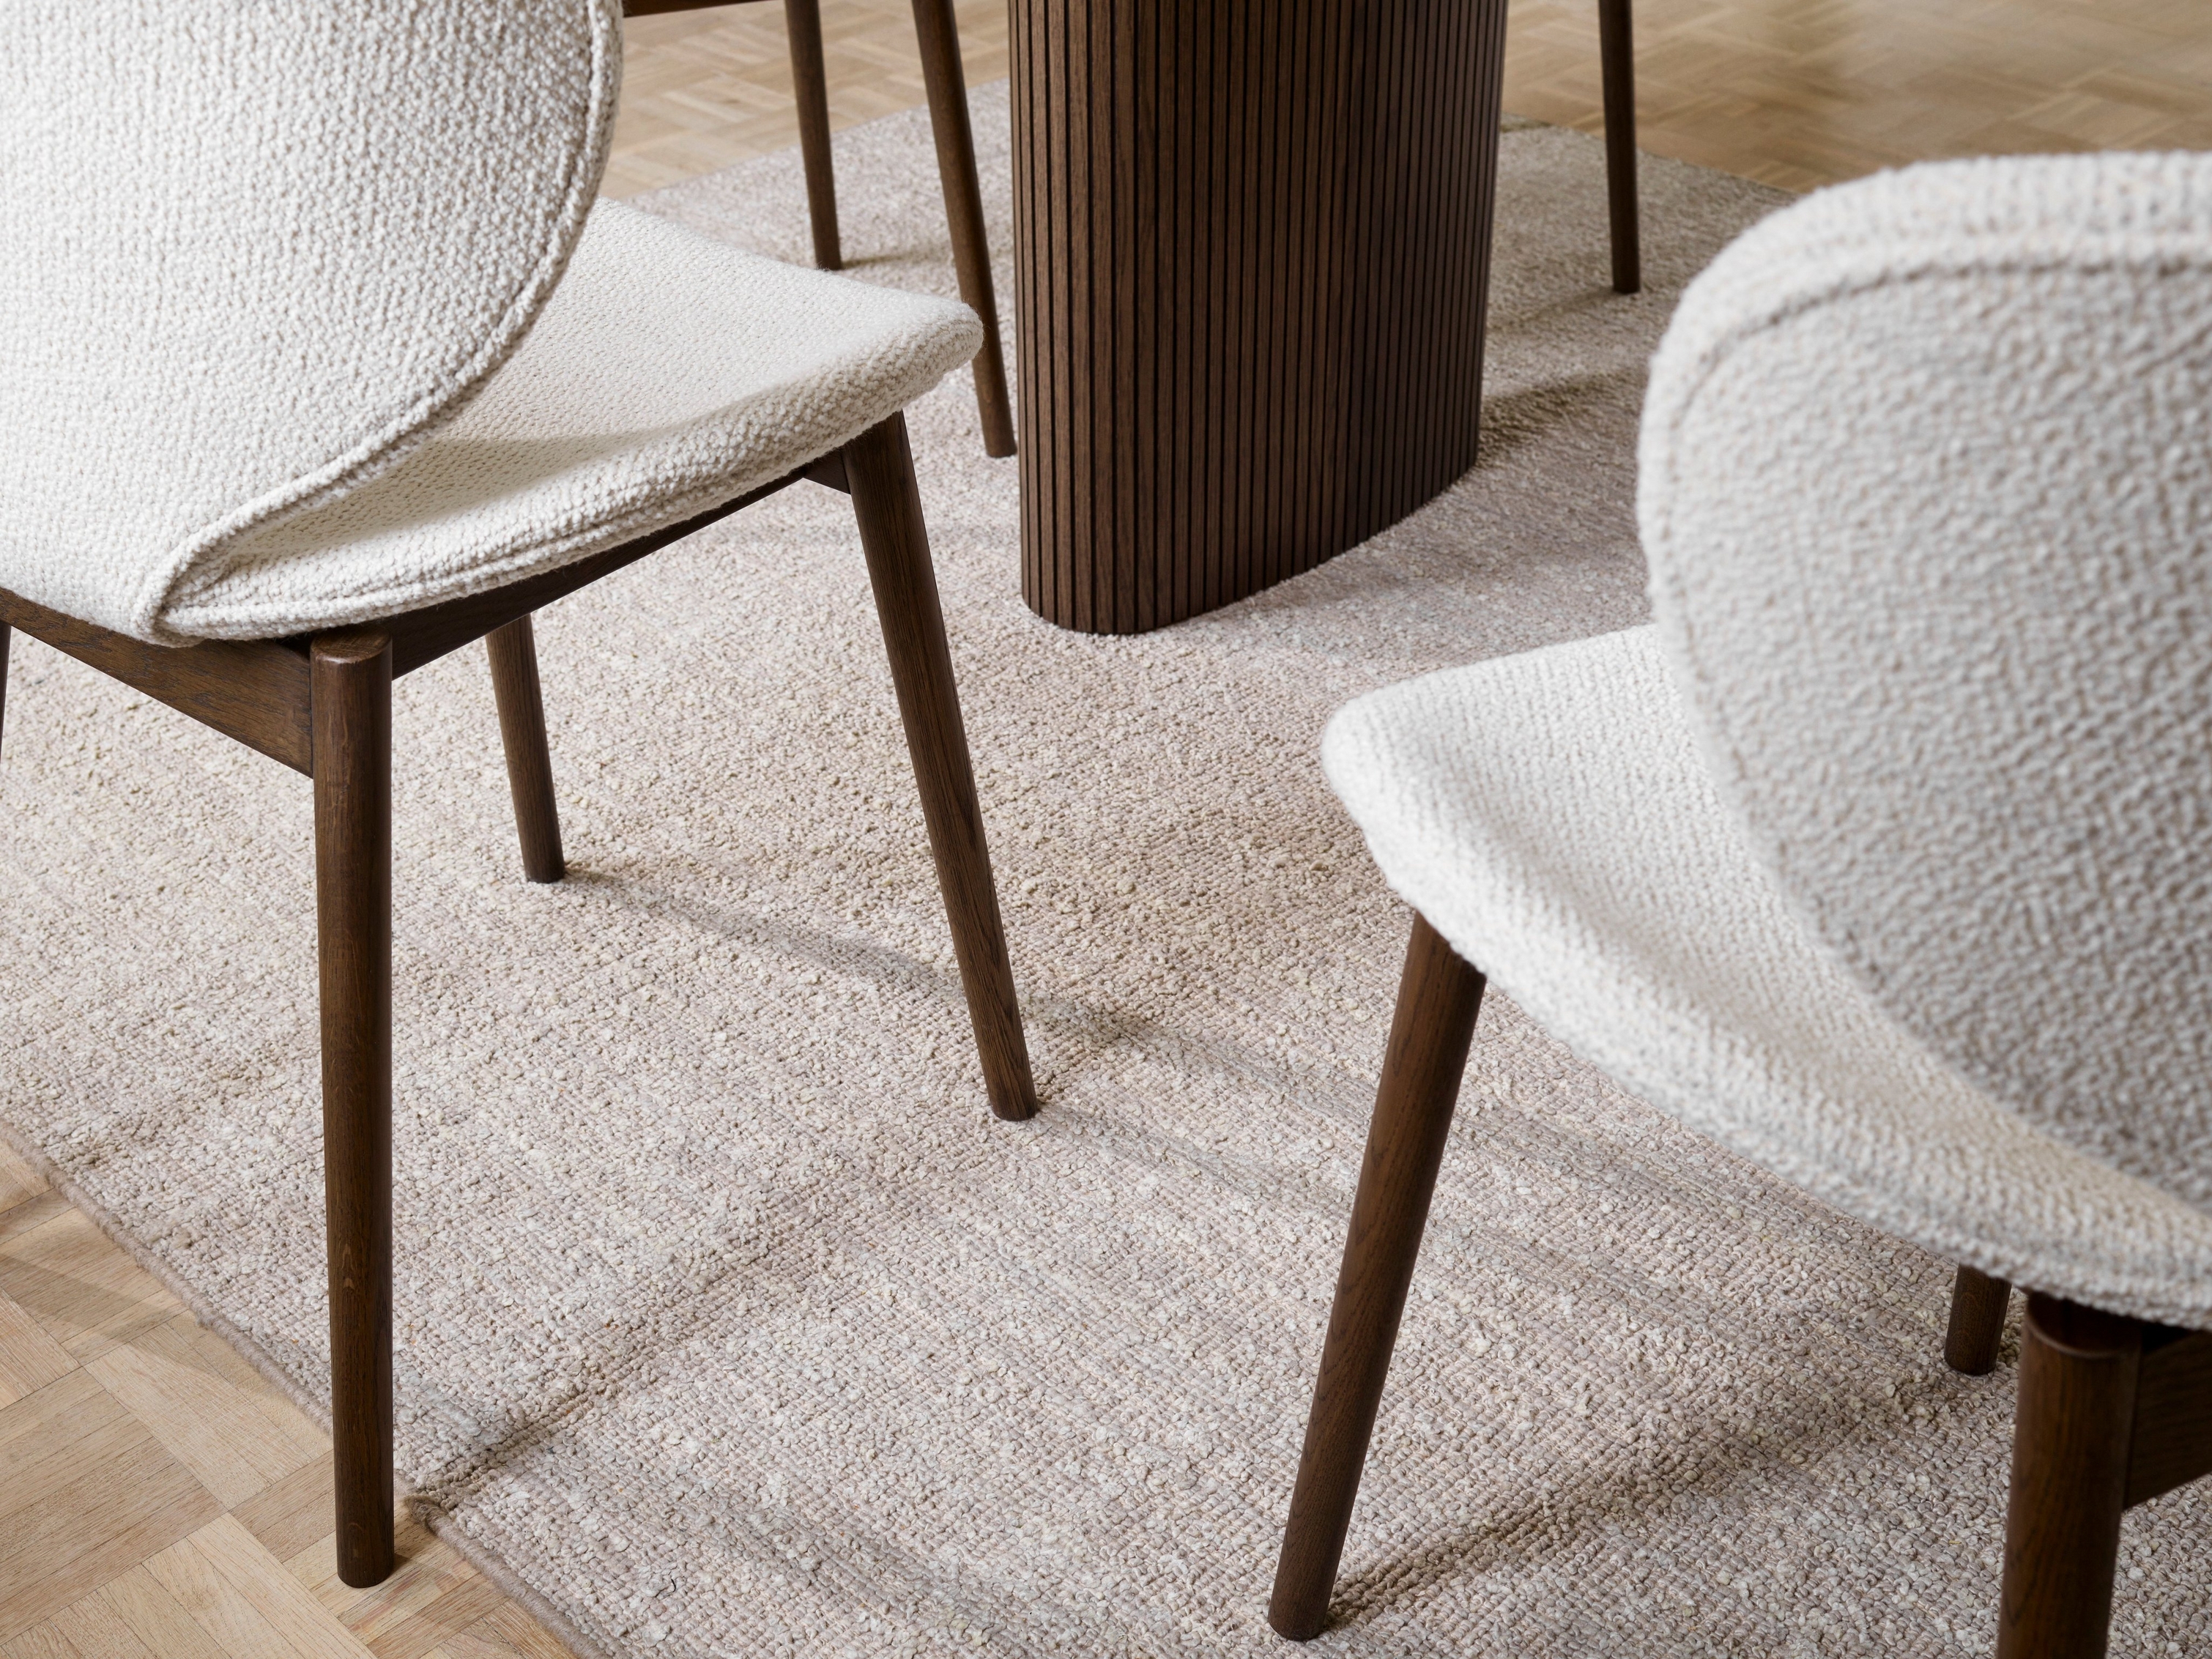 Strukturierte Hamilton Stühle und Teppich mit Holztisch, Fokus auf Bodendetails.